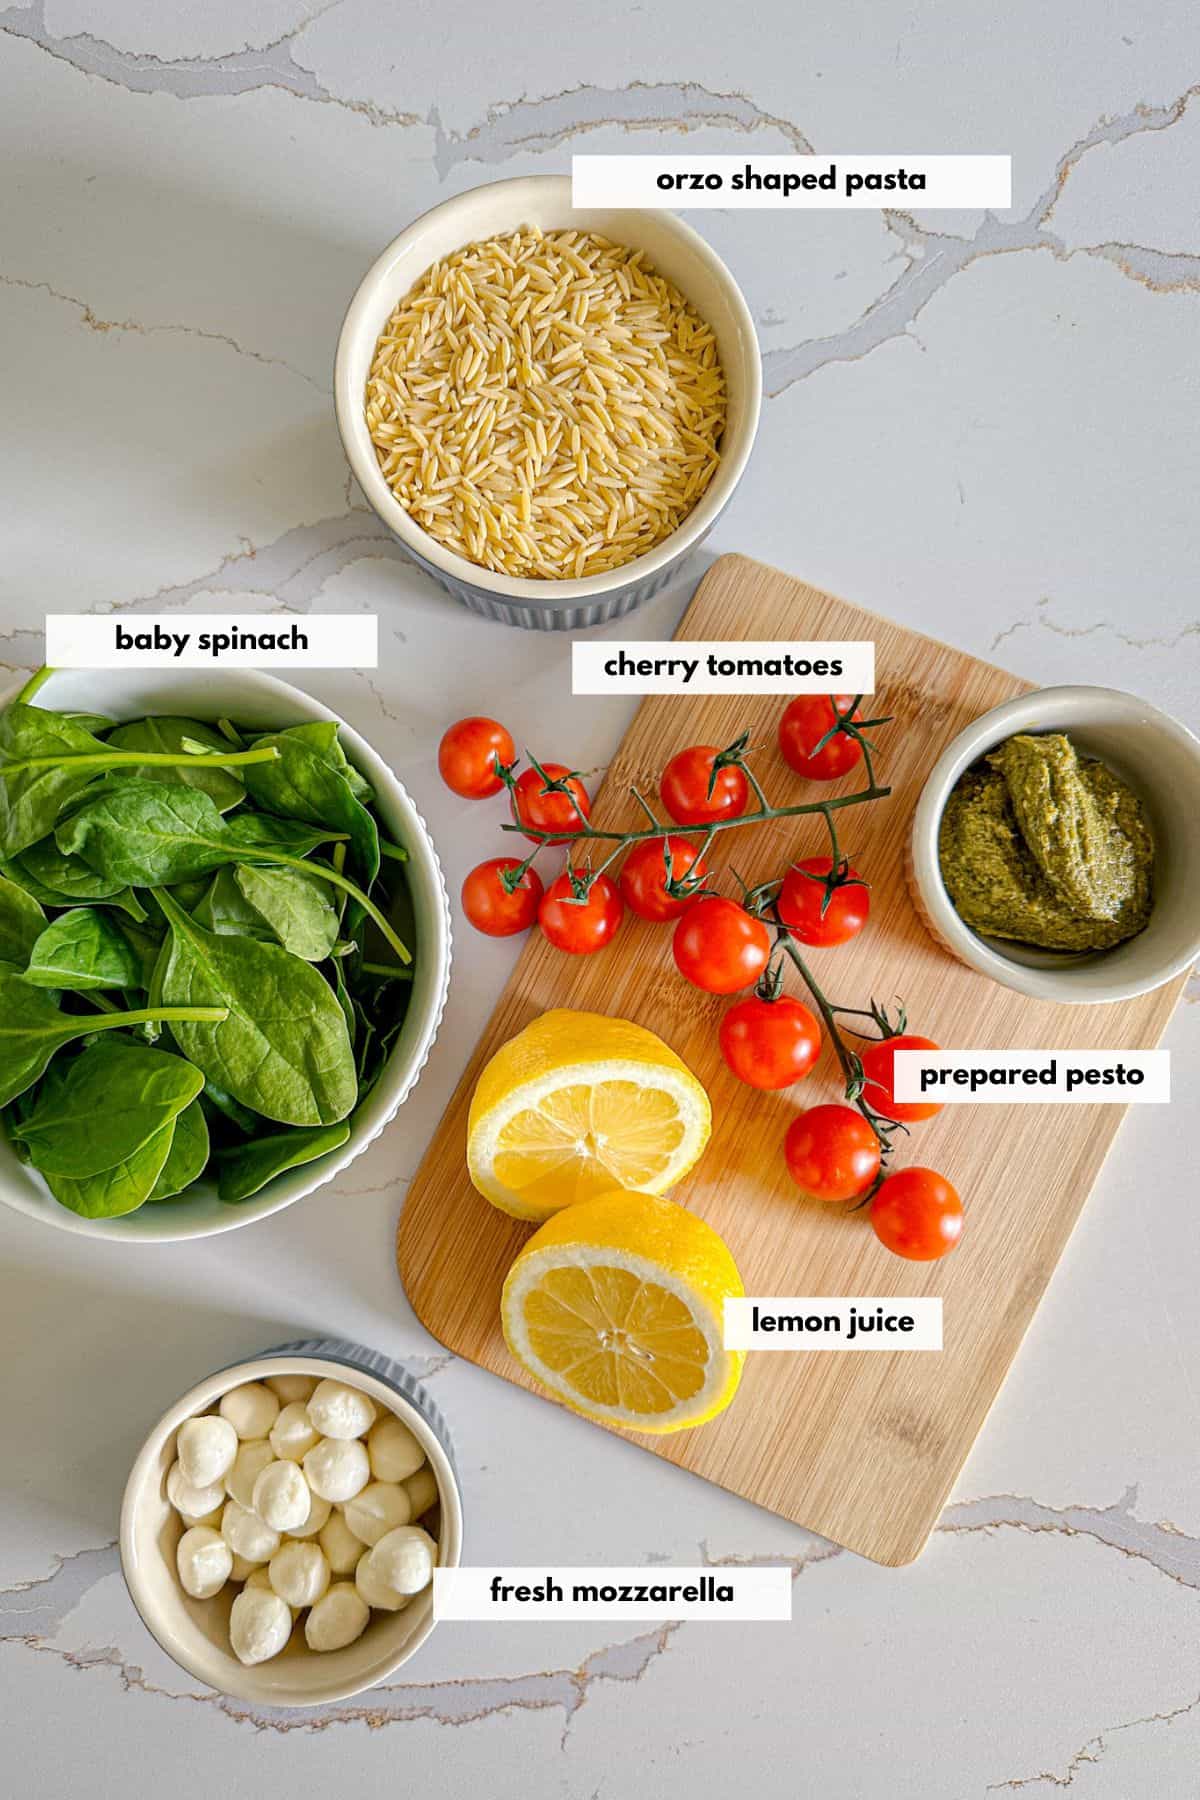 Ingredients to make orzo pesto pasta are orzo, fresh spinach, tomatoes, basil peston, mozzarella cheese and lemon juice.